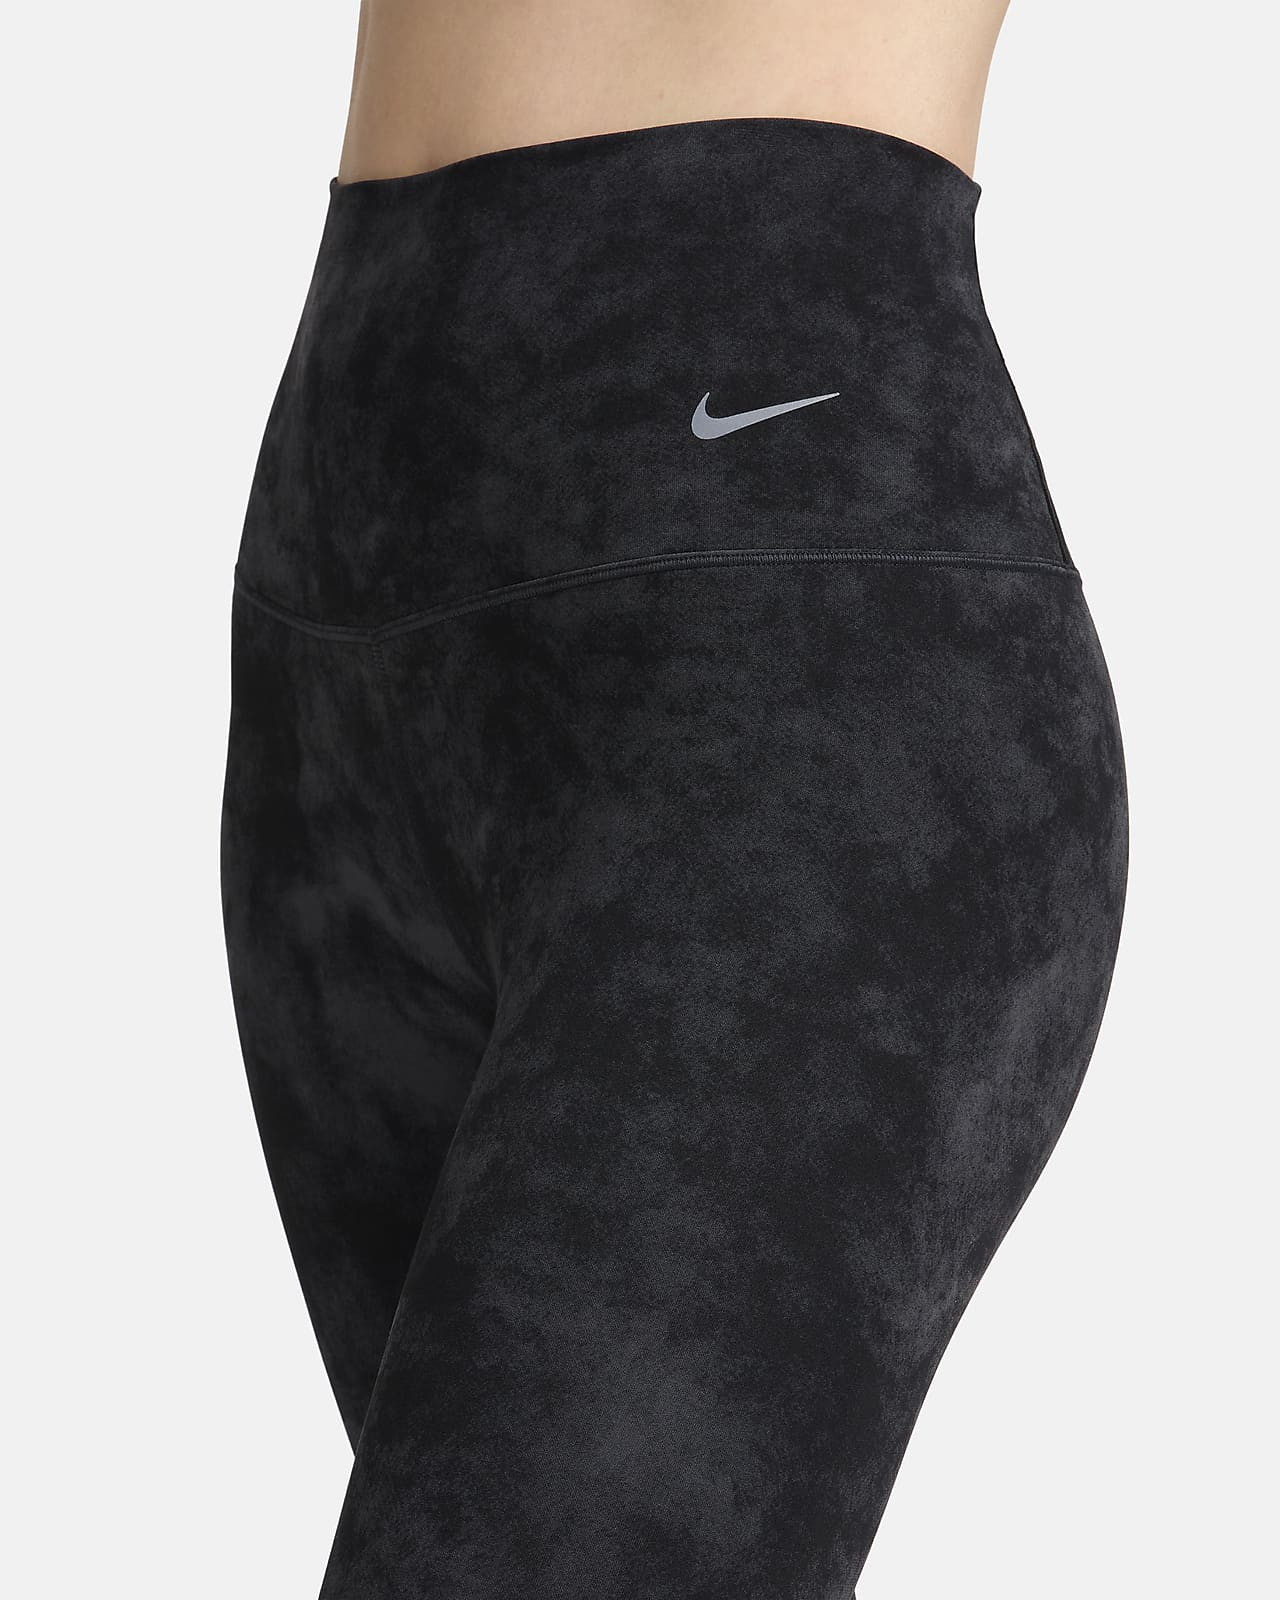 Black Zenvy 7/8 Leggings by Nike on Sale